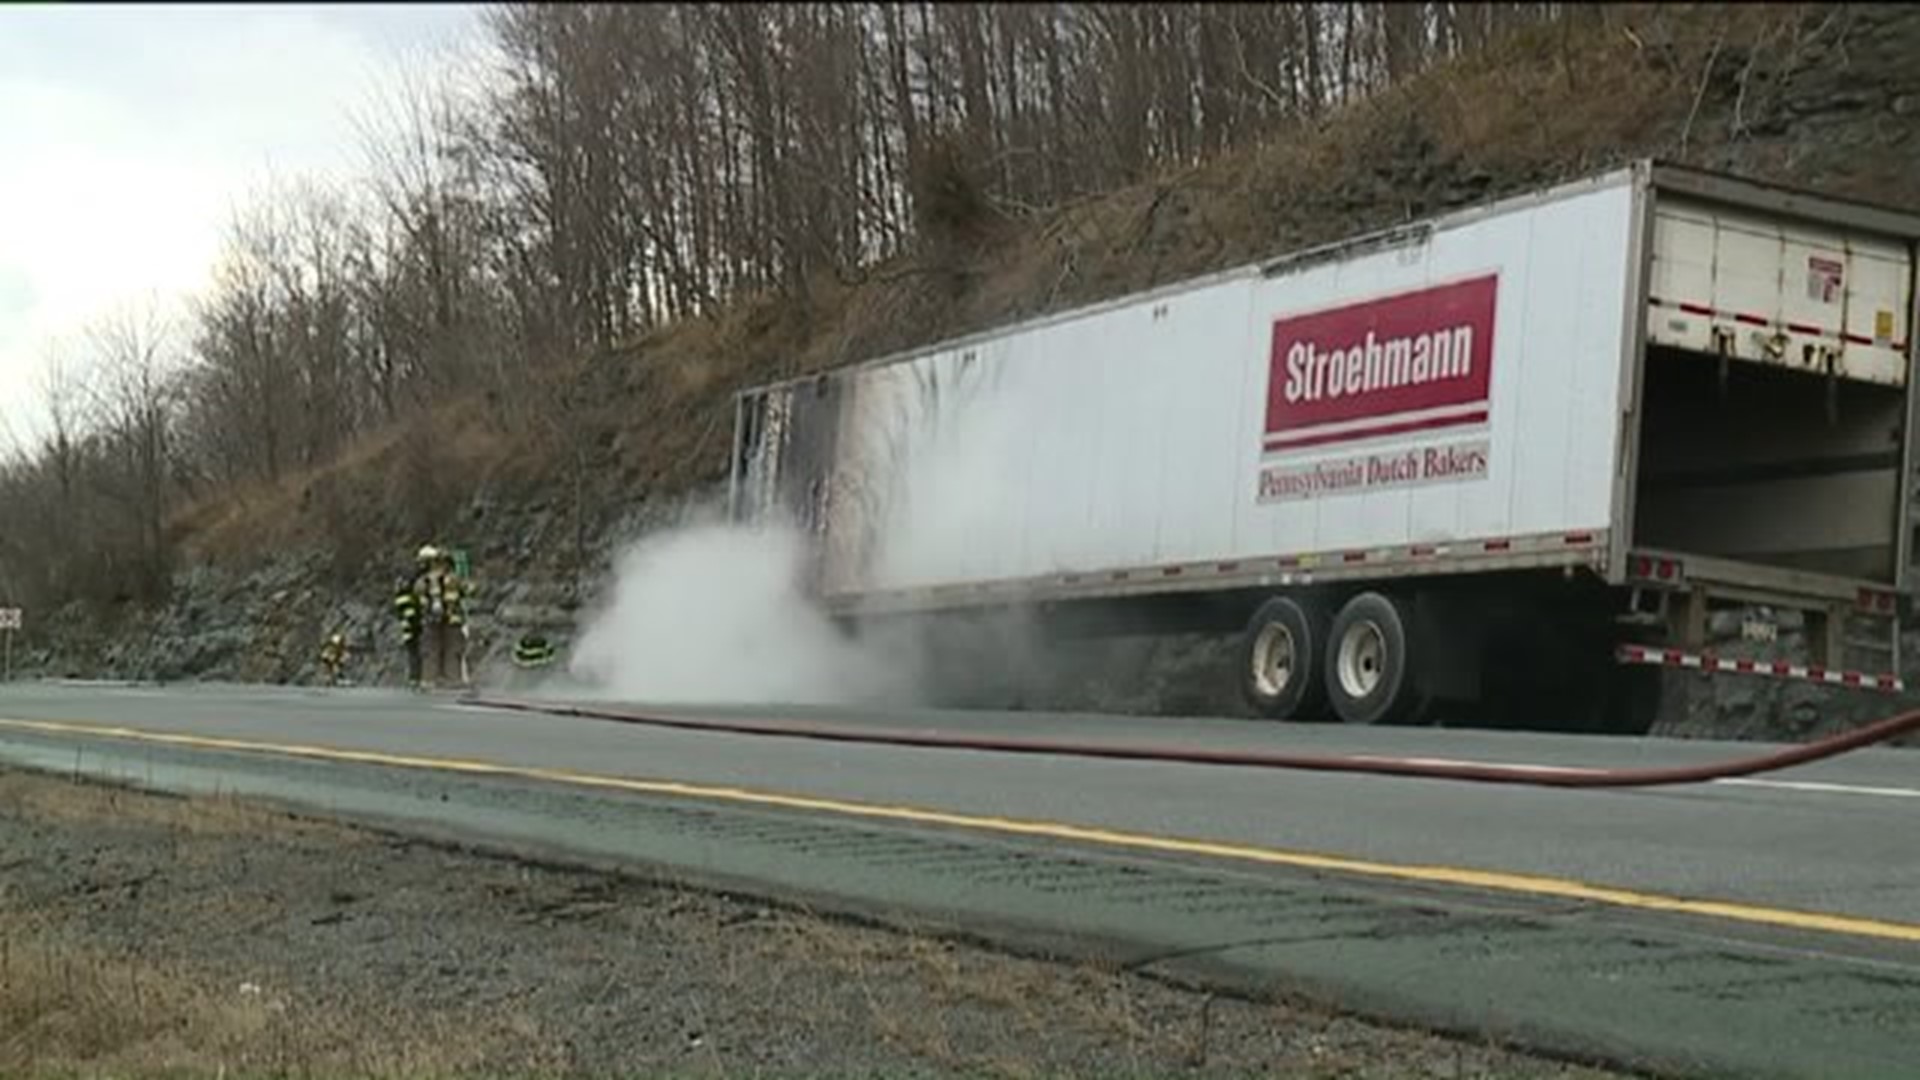 Highway Traffic Slowed by Bread Truck Fire